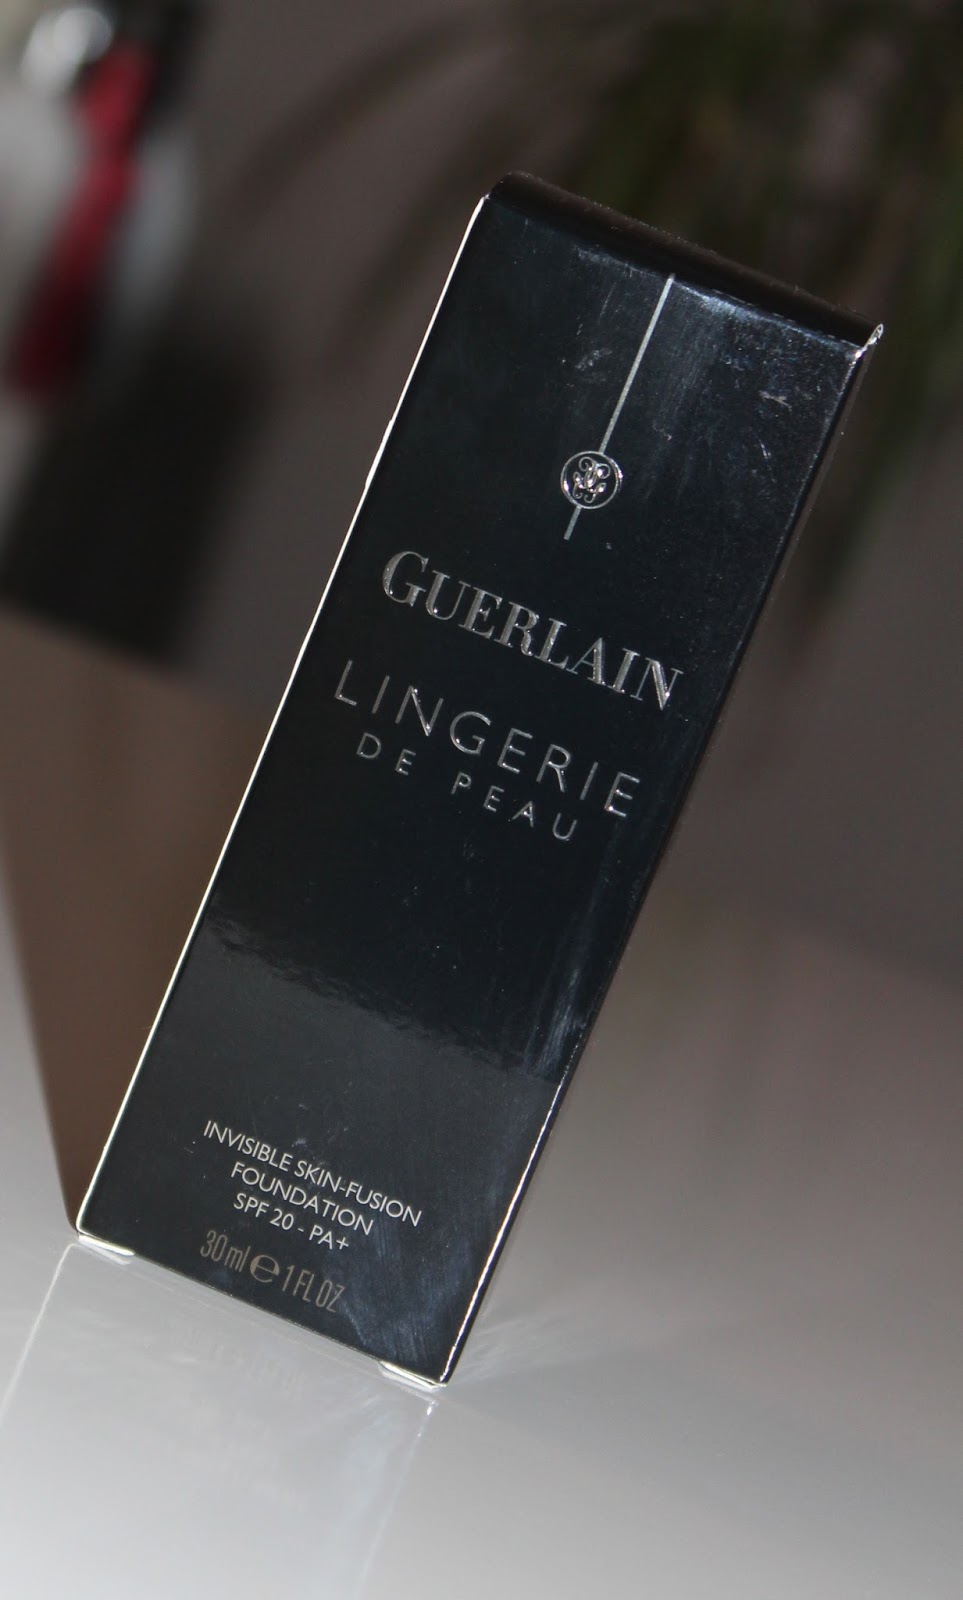 Guerlain Lingerie De Peau tekući puder u nijansi 02 Beige Claire